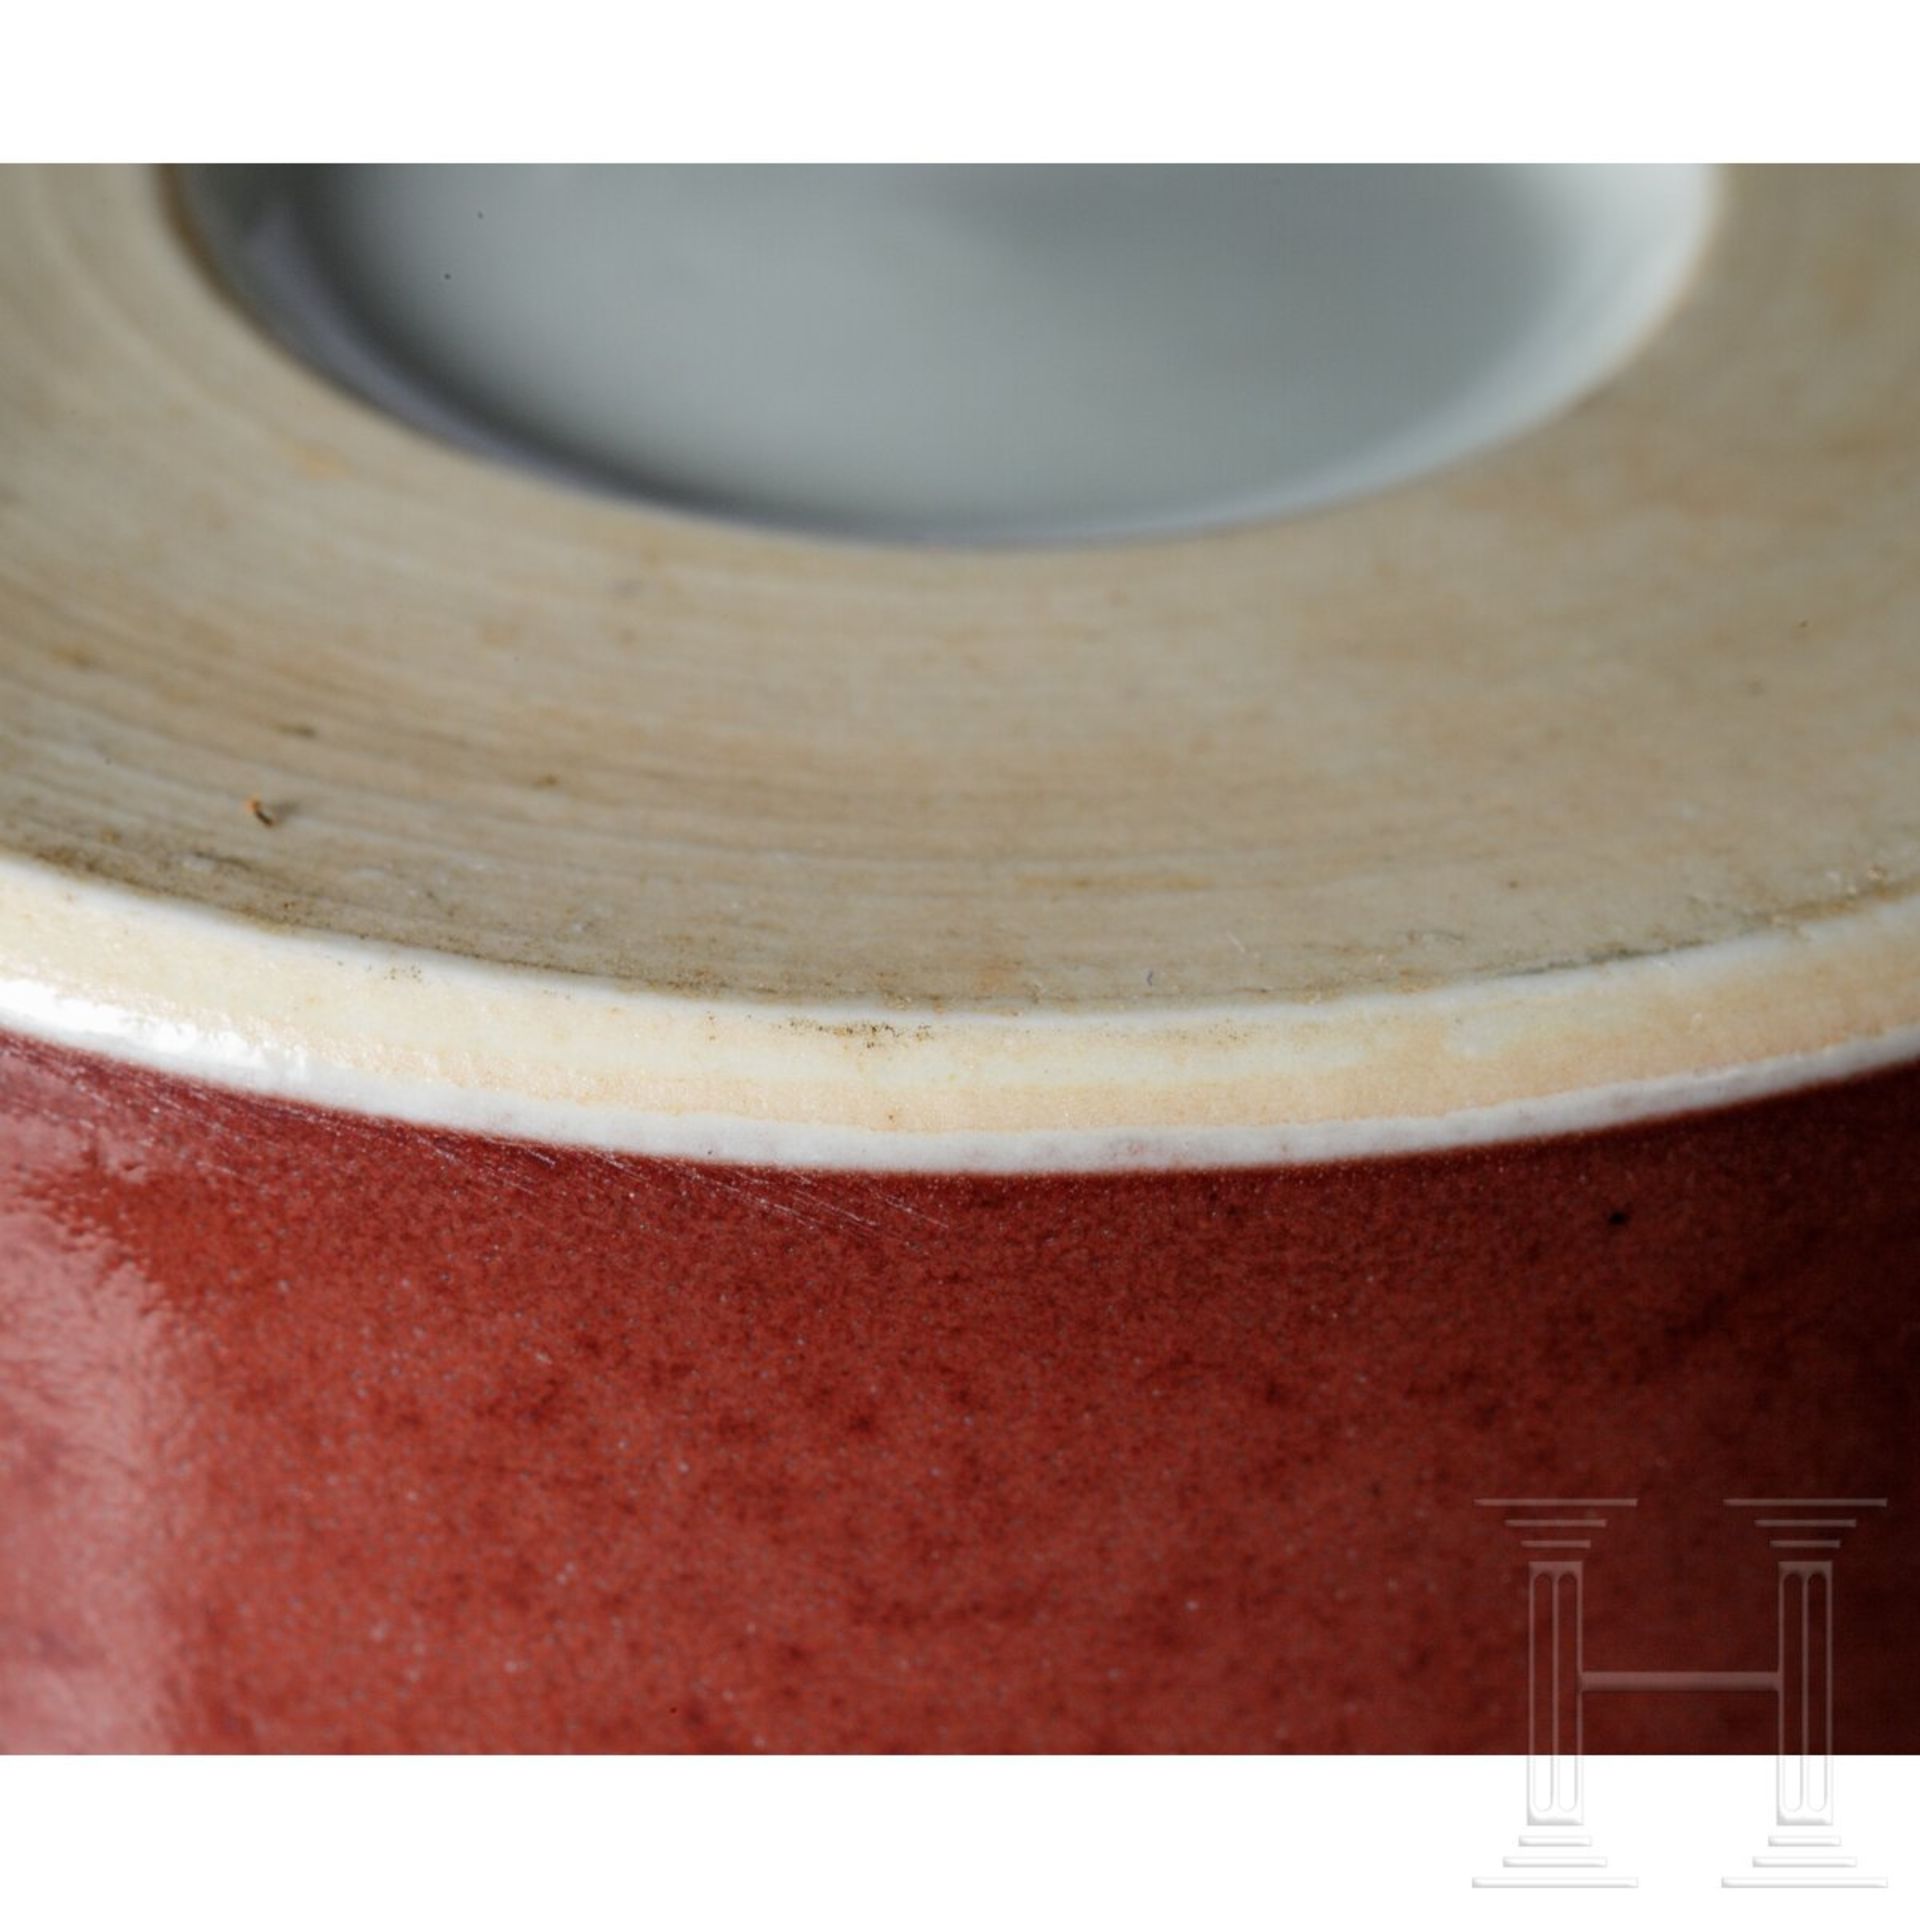 Meiping-Vase mit kupferfarbener Glasur, wohl 18. - 19. Jhdt. - Bild 6 aus 12